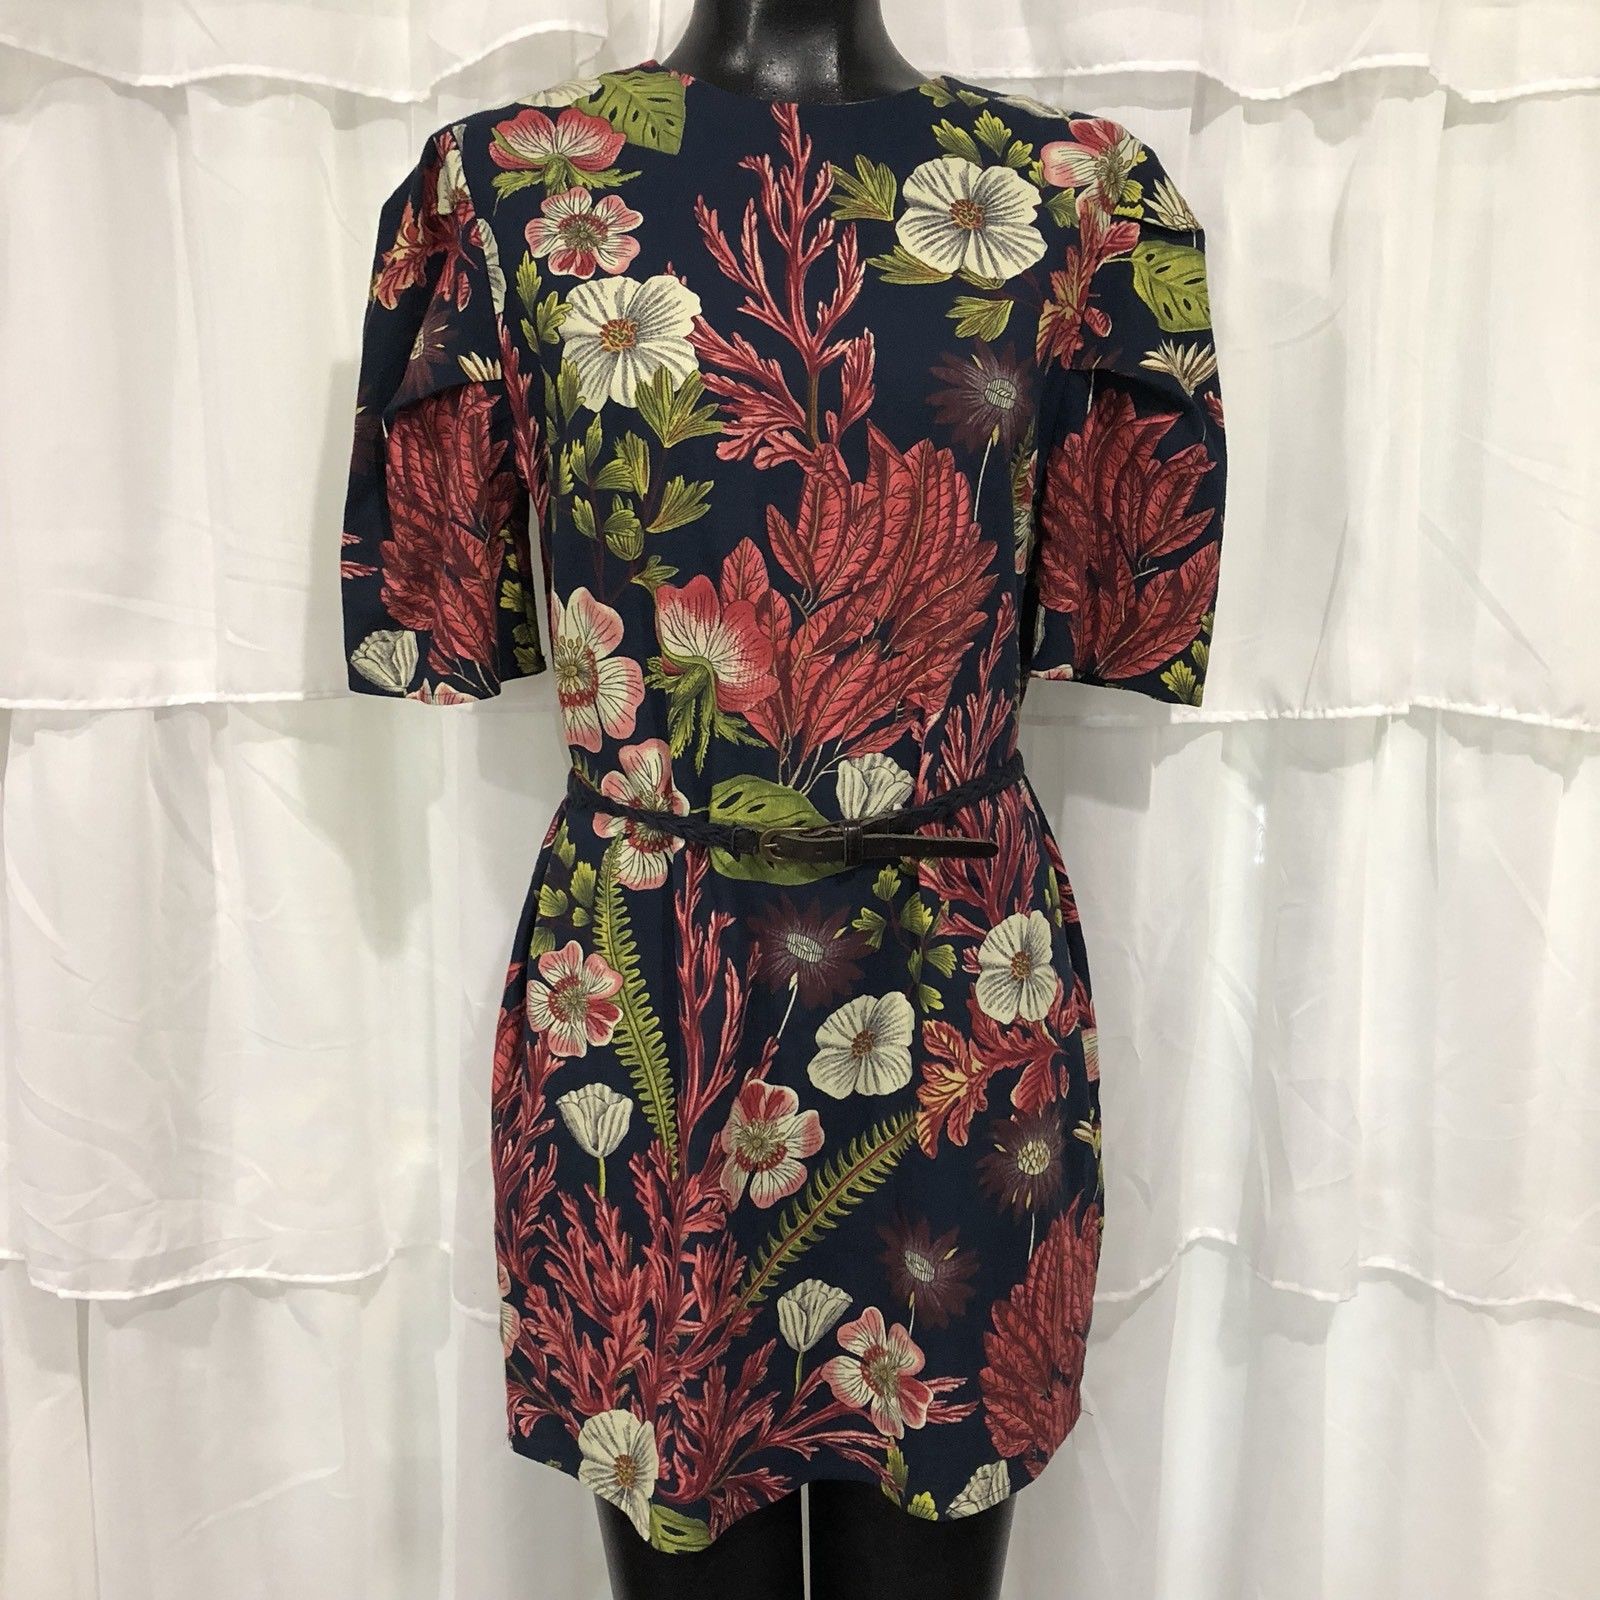 h&m floral dress 2019